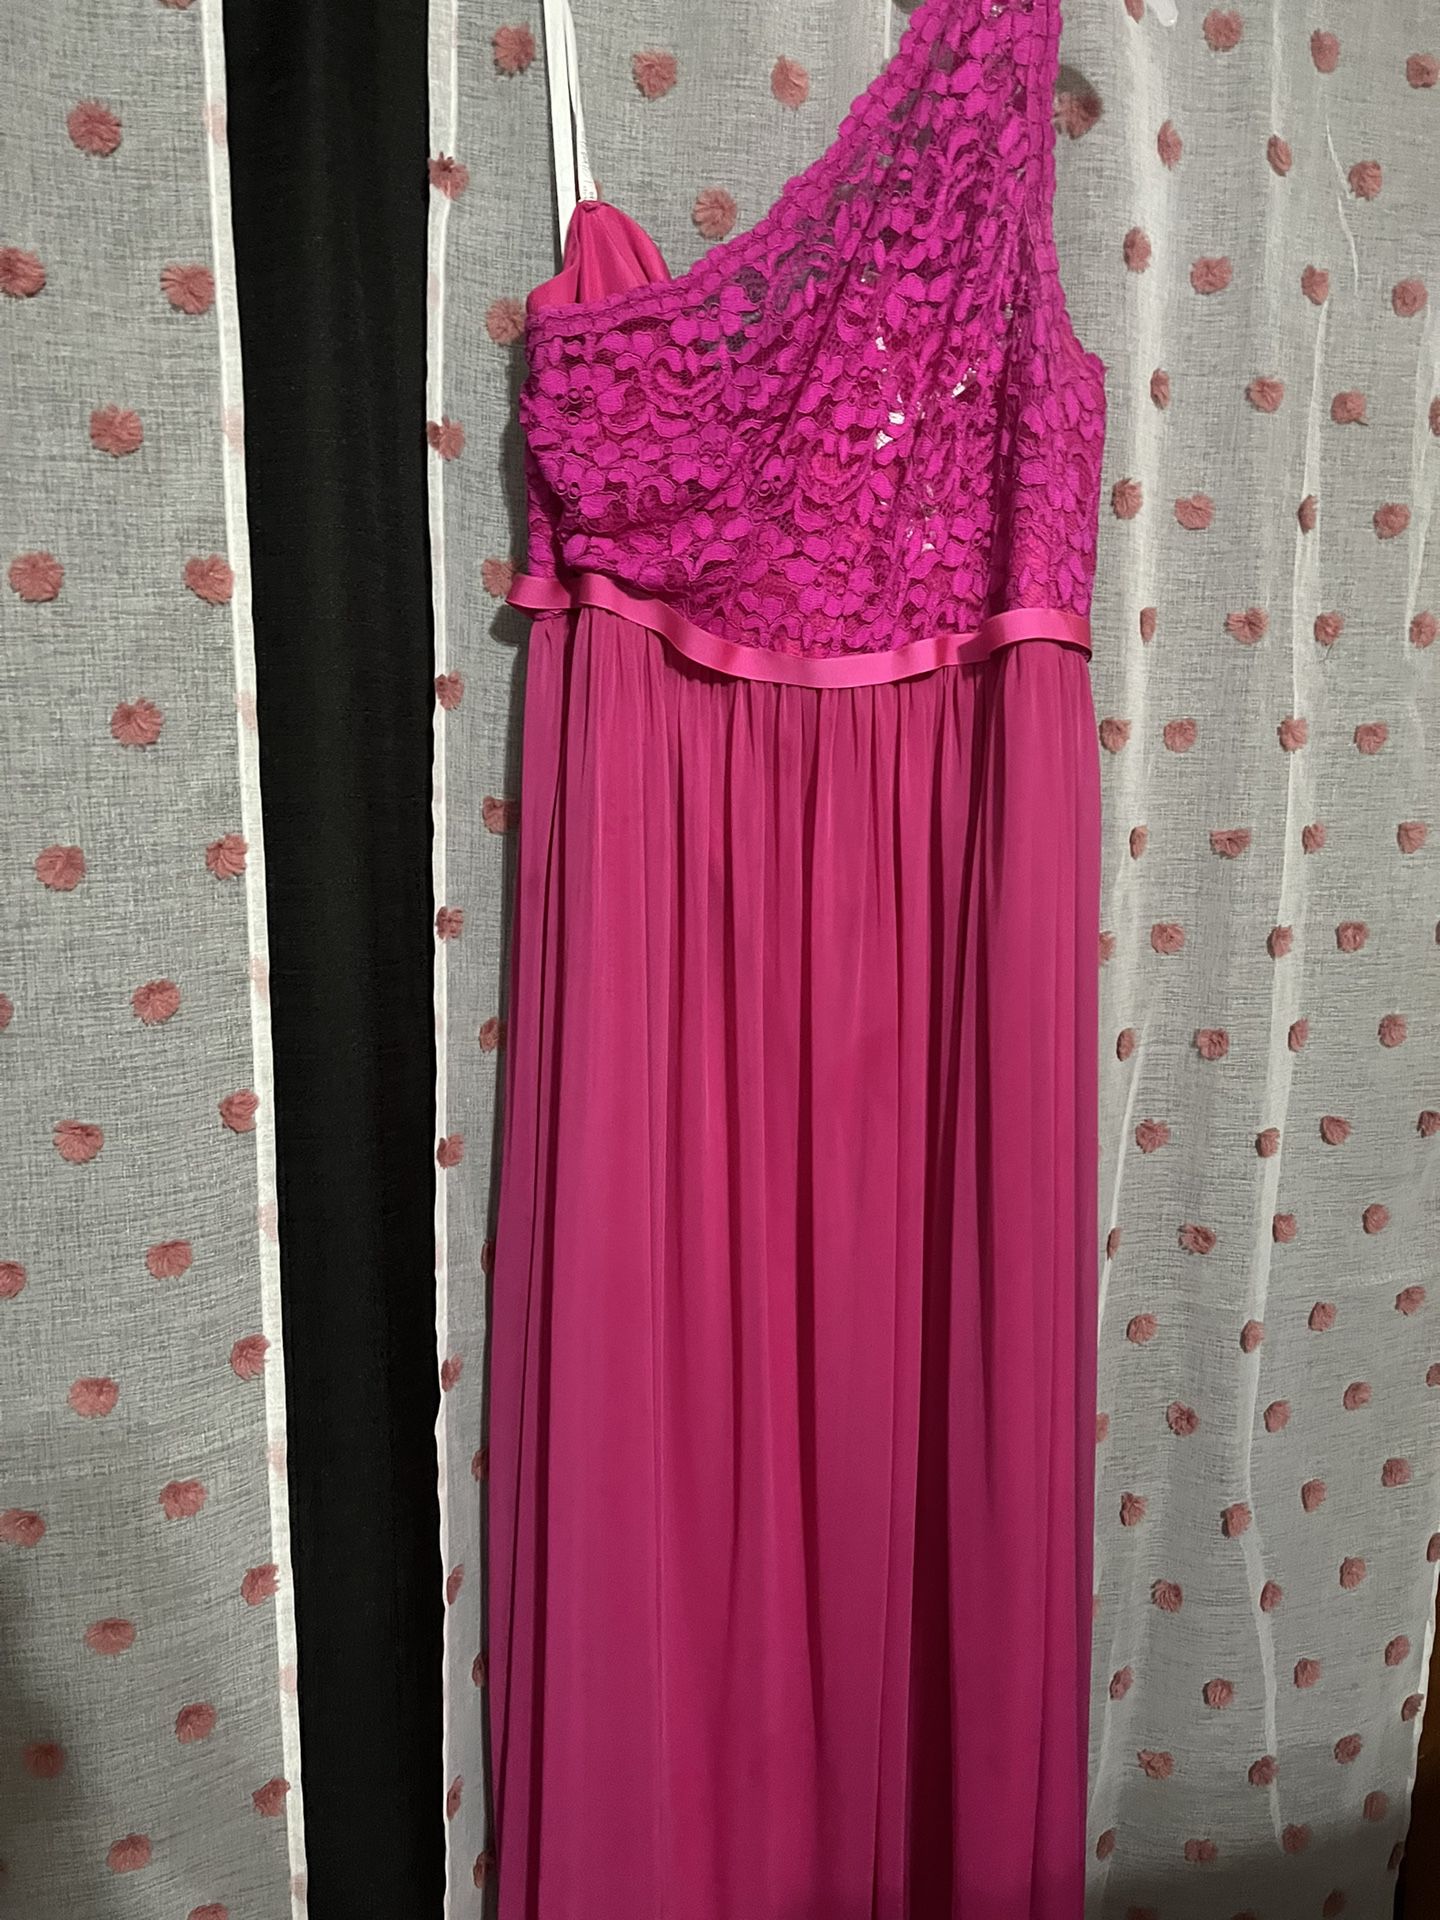 Free size 16 Hot Pink Dress